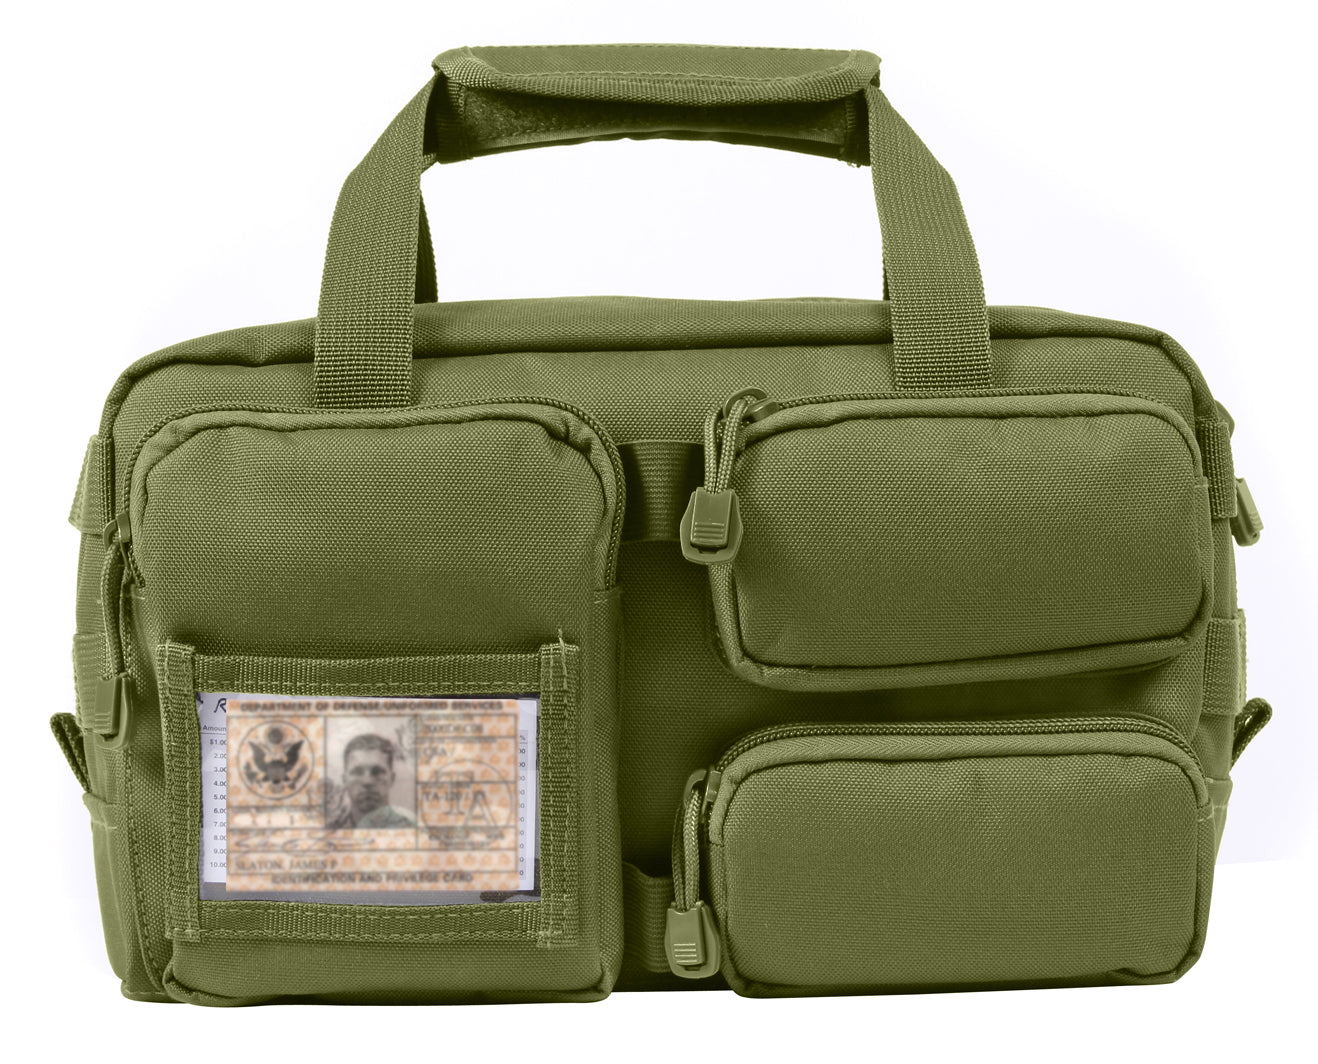 Milspec Tactical Tool Bag Equipment Tool Bags MilTac Tactical Military Outdoor Gear Australia